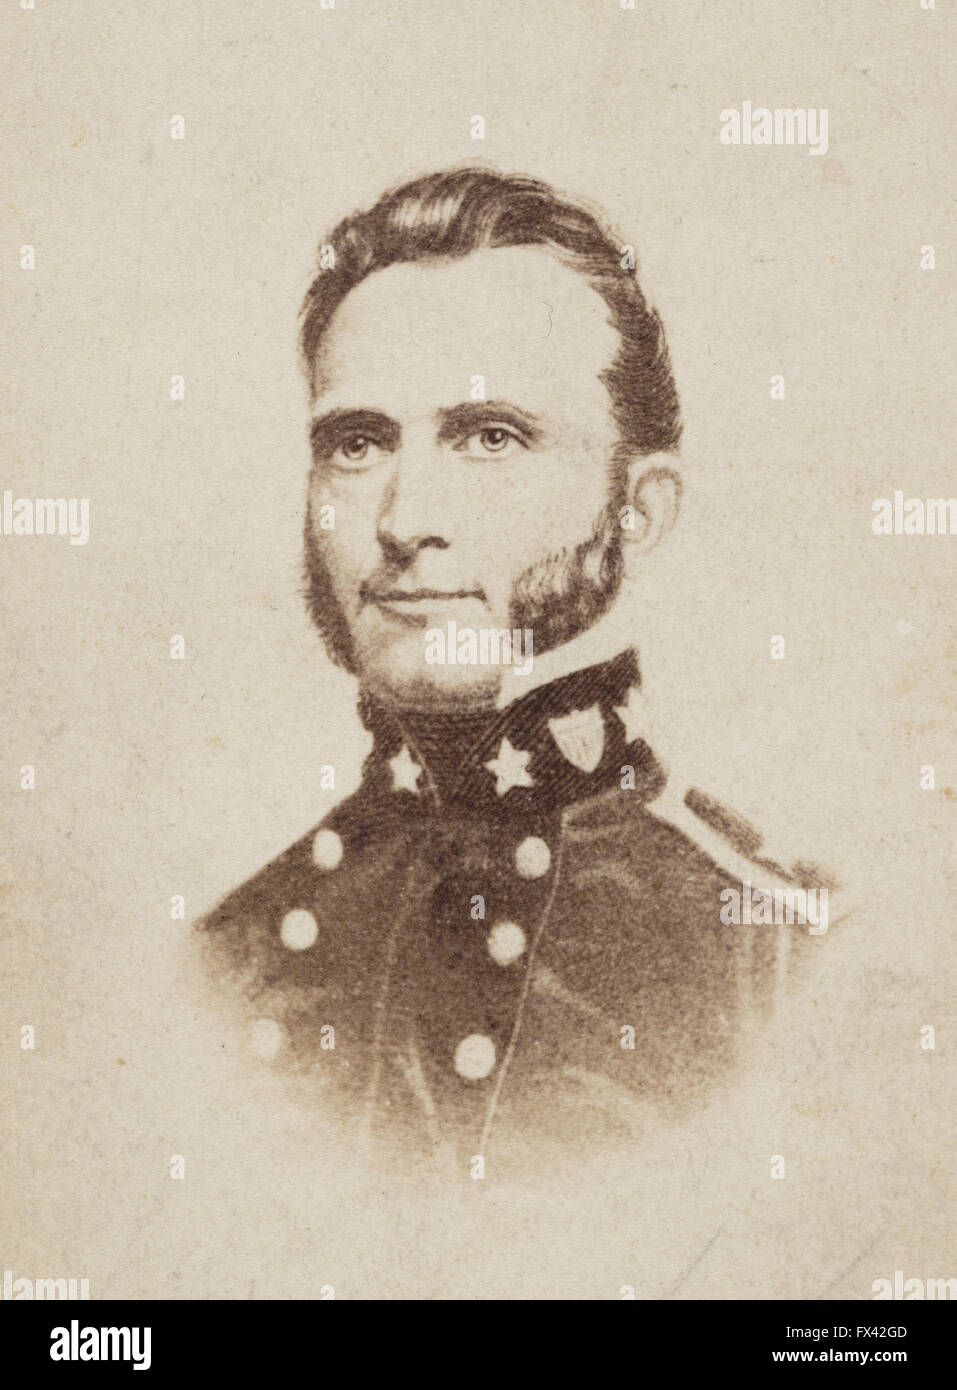 Général 'Stonewall' Jackson, général confédéré durant la guerre civile américaine. Général Thomas Jonathan Jackson 'Stonewall' Banque D'Images